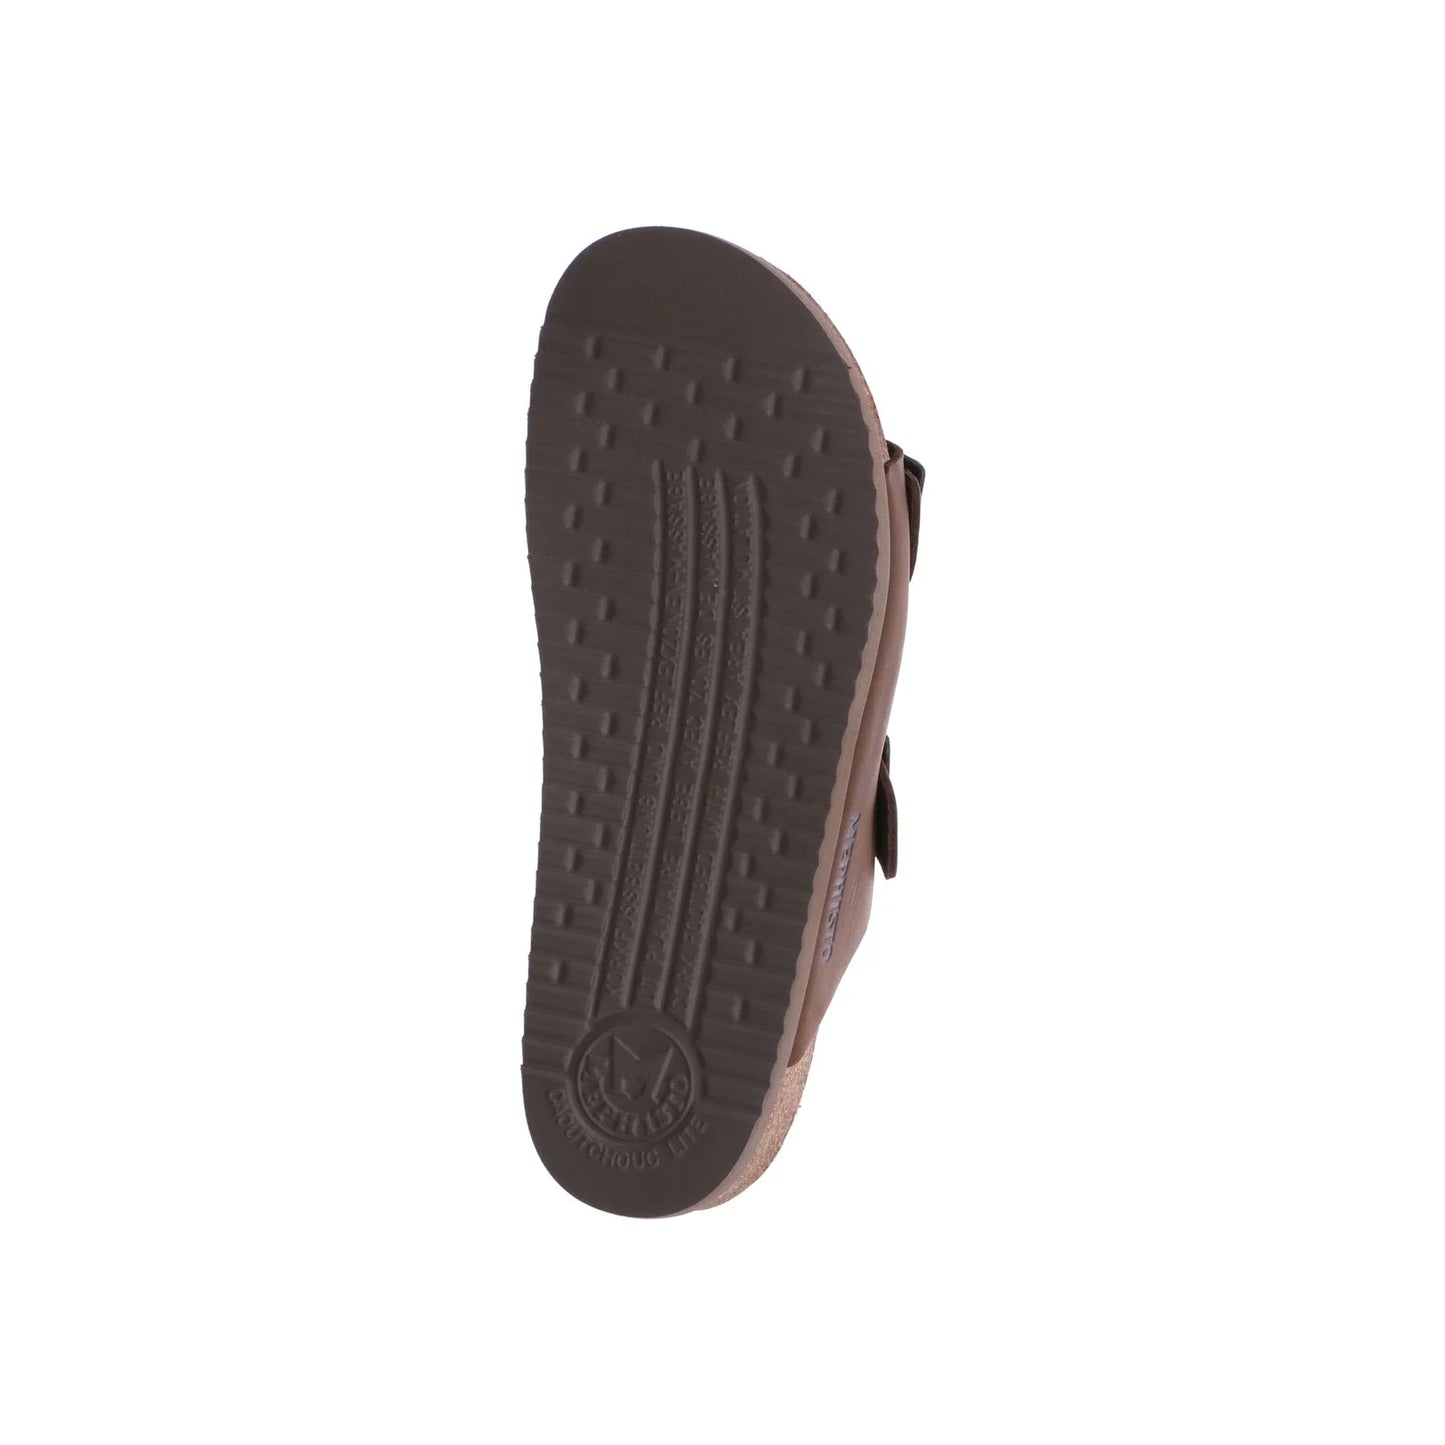 Mephisto Nerio 2-Strap Sandal - Scratch Dark Brown - Size 42